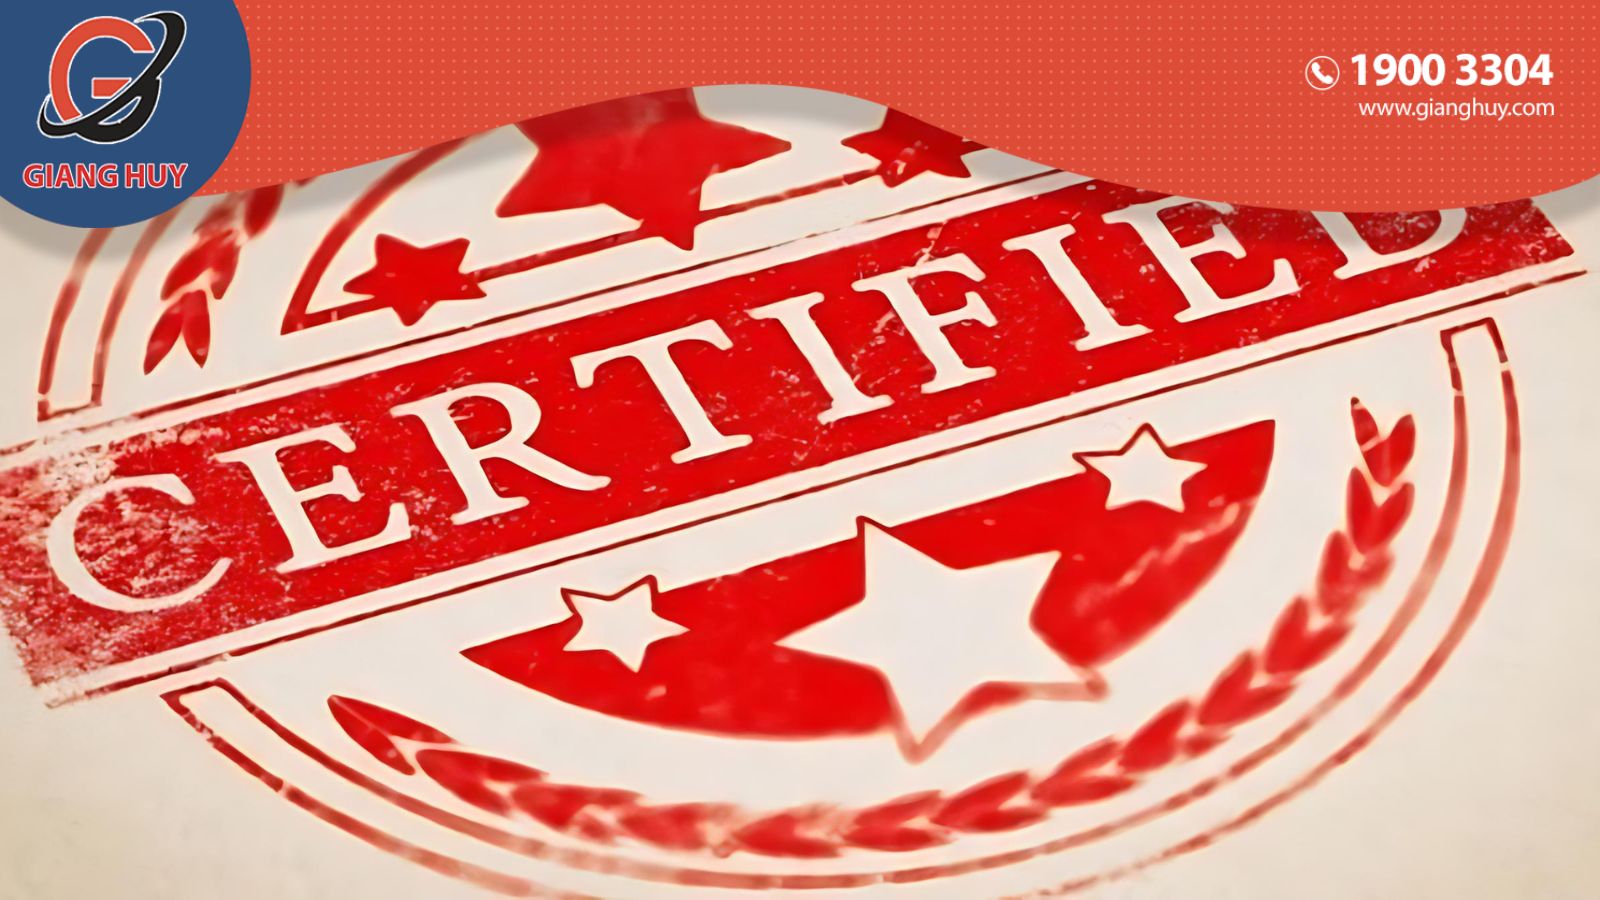 Certificate of Quality, hay còn gọi là Giấy chứng nhận chất lượng